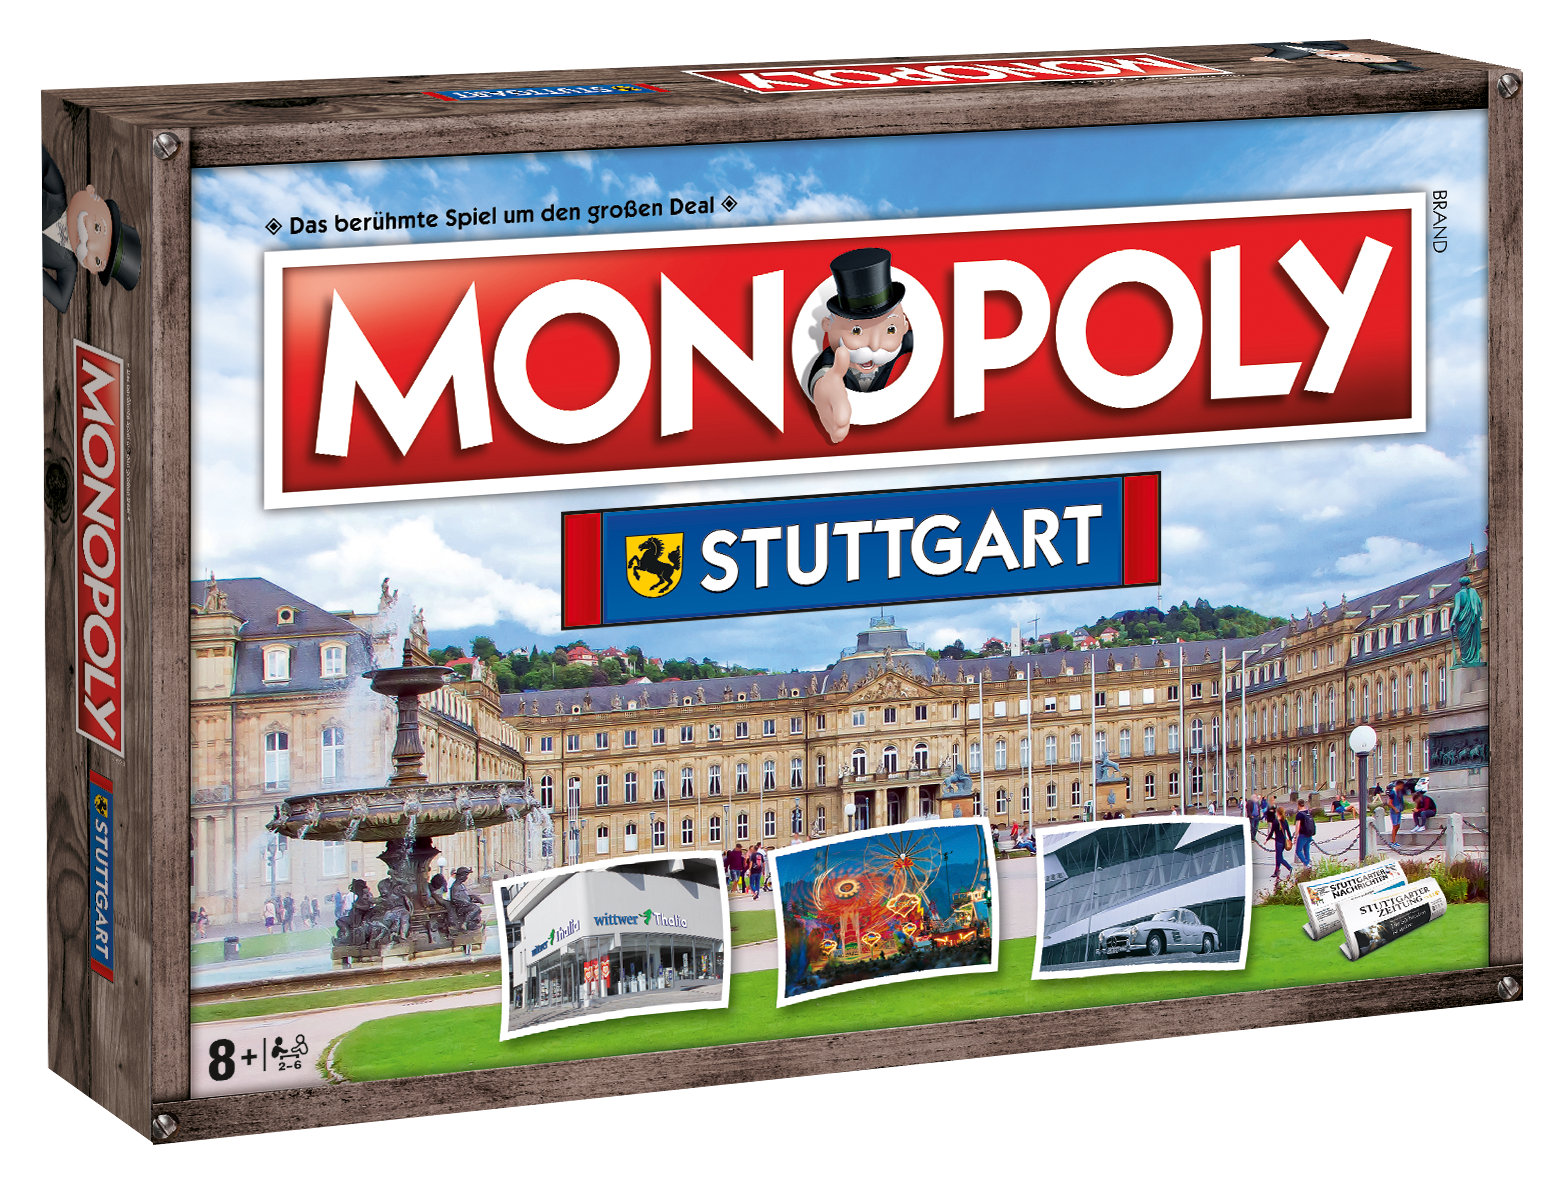 Monopoly Stuttgart